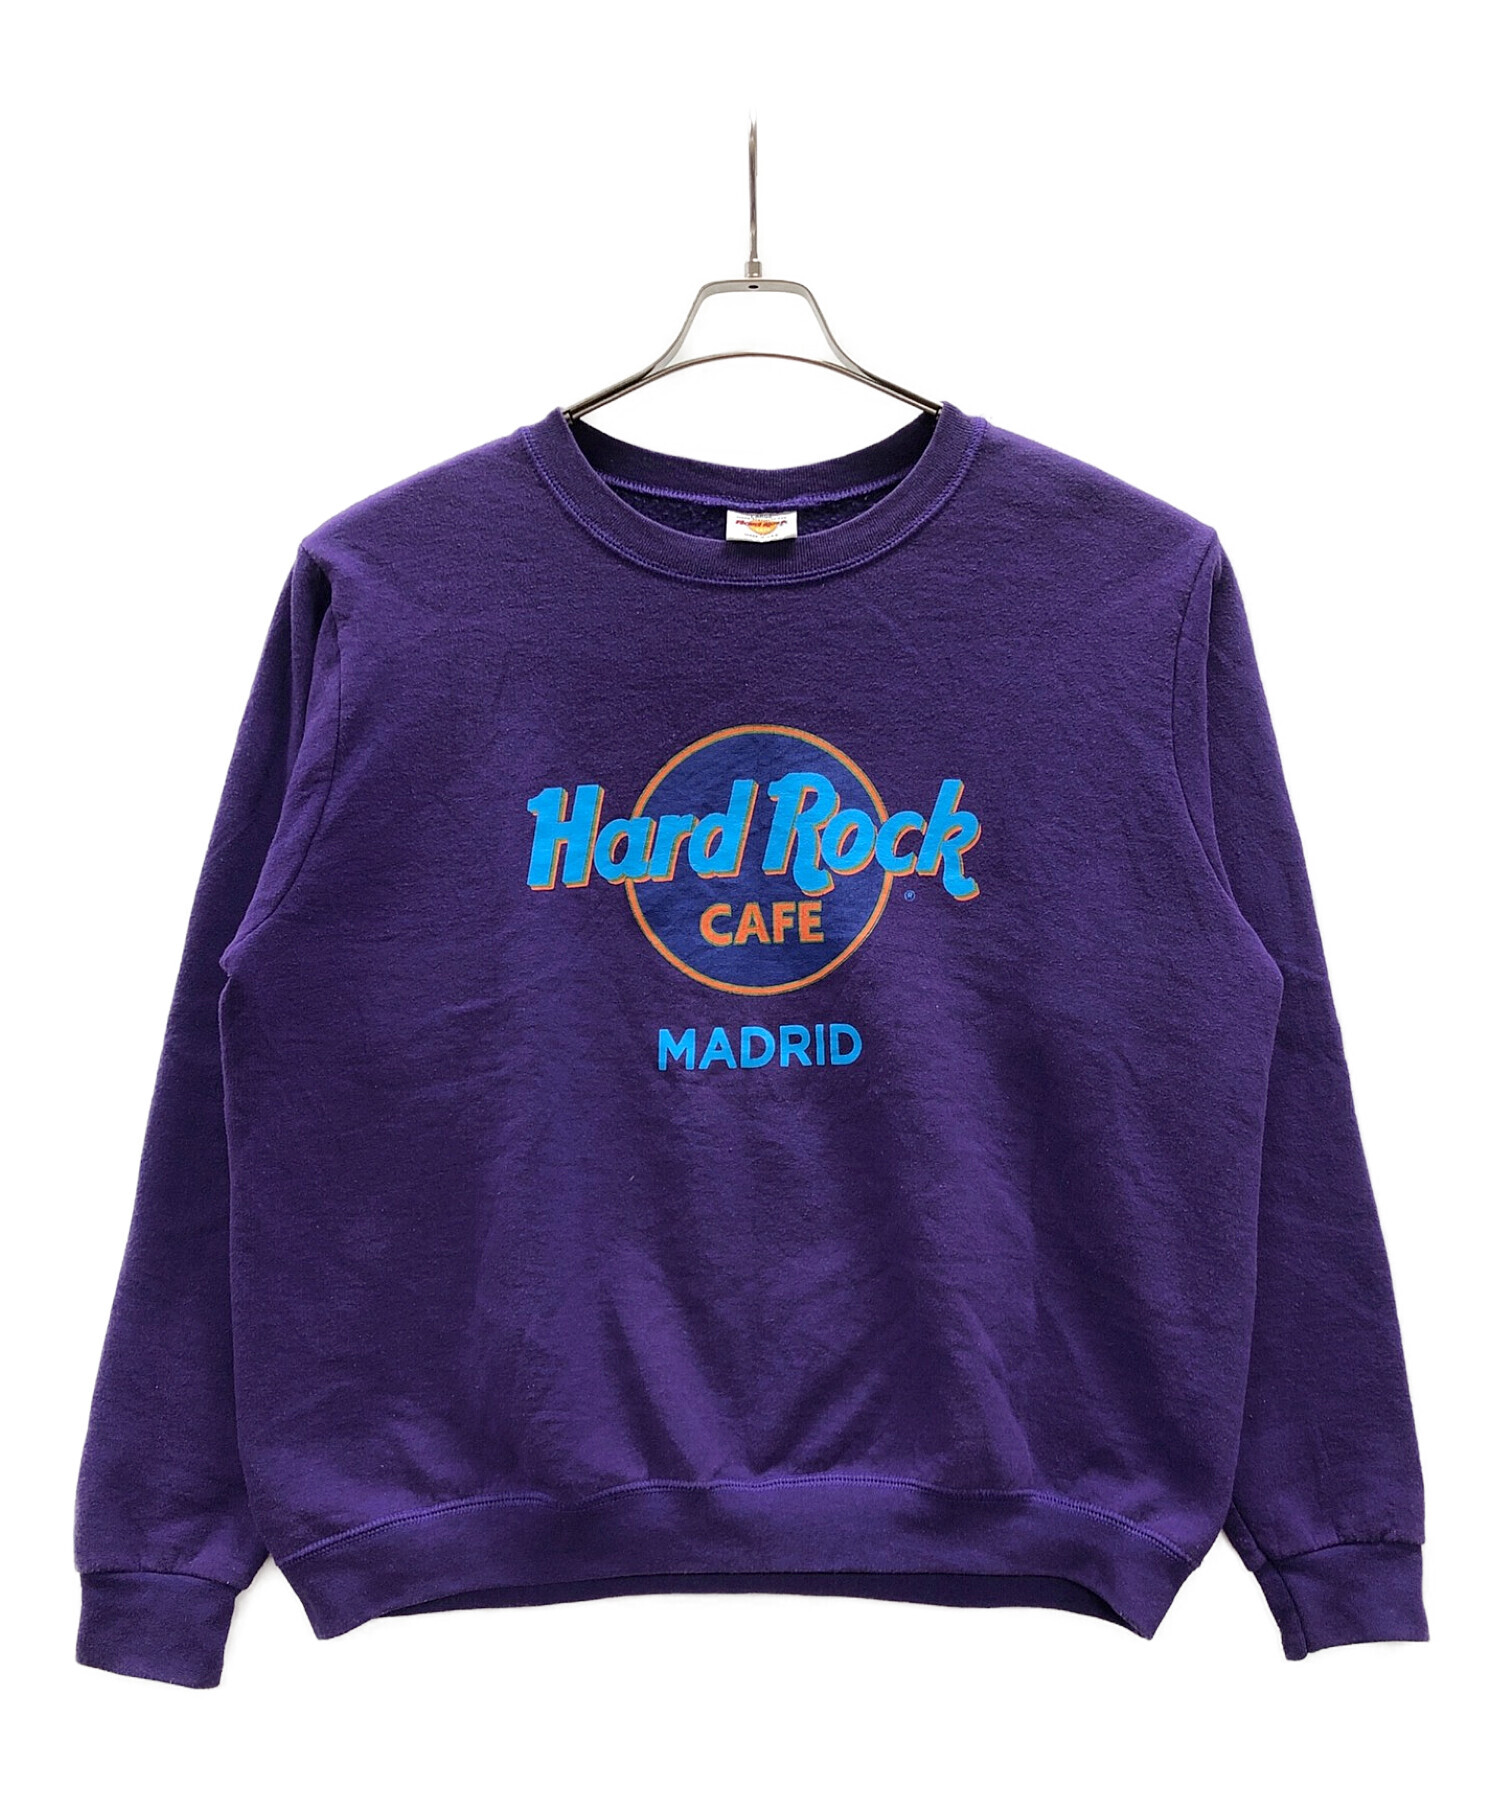 Hard Rock cafe MADRID (ハードロックカフェマドリード) ヴィンテージスウェット パープル サイズ:L